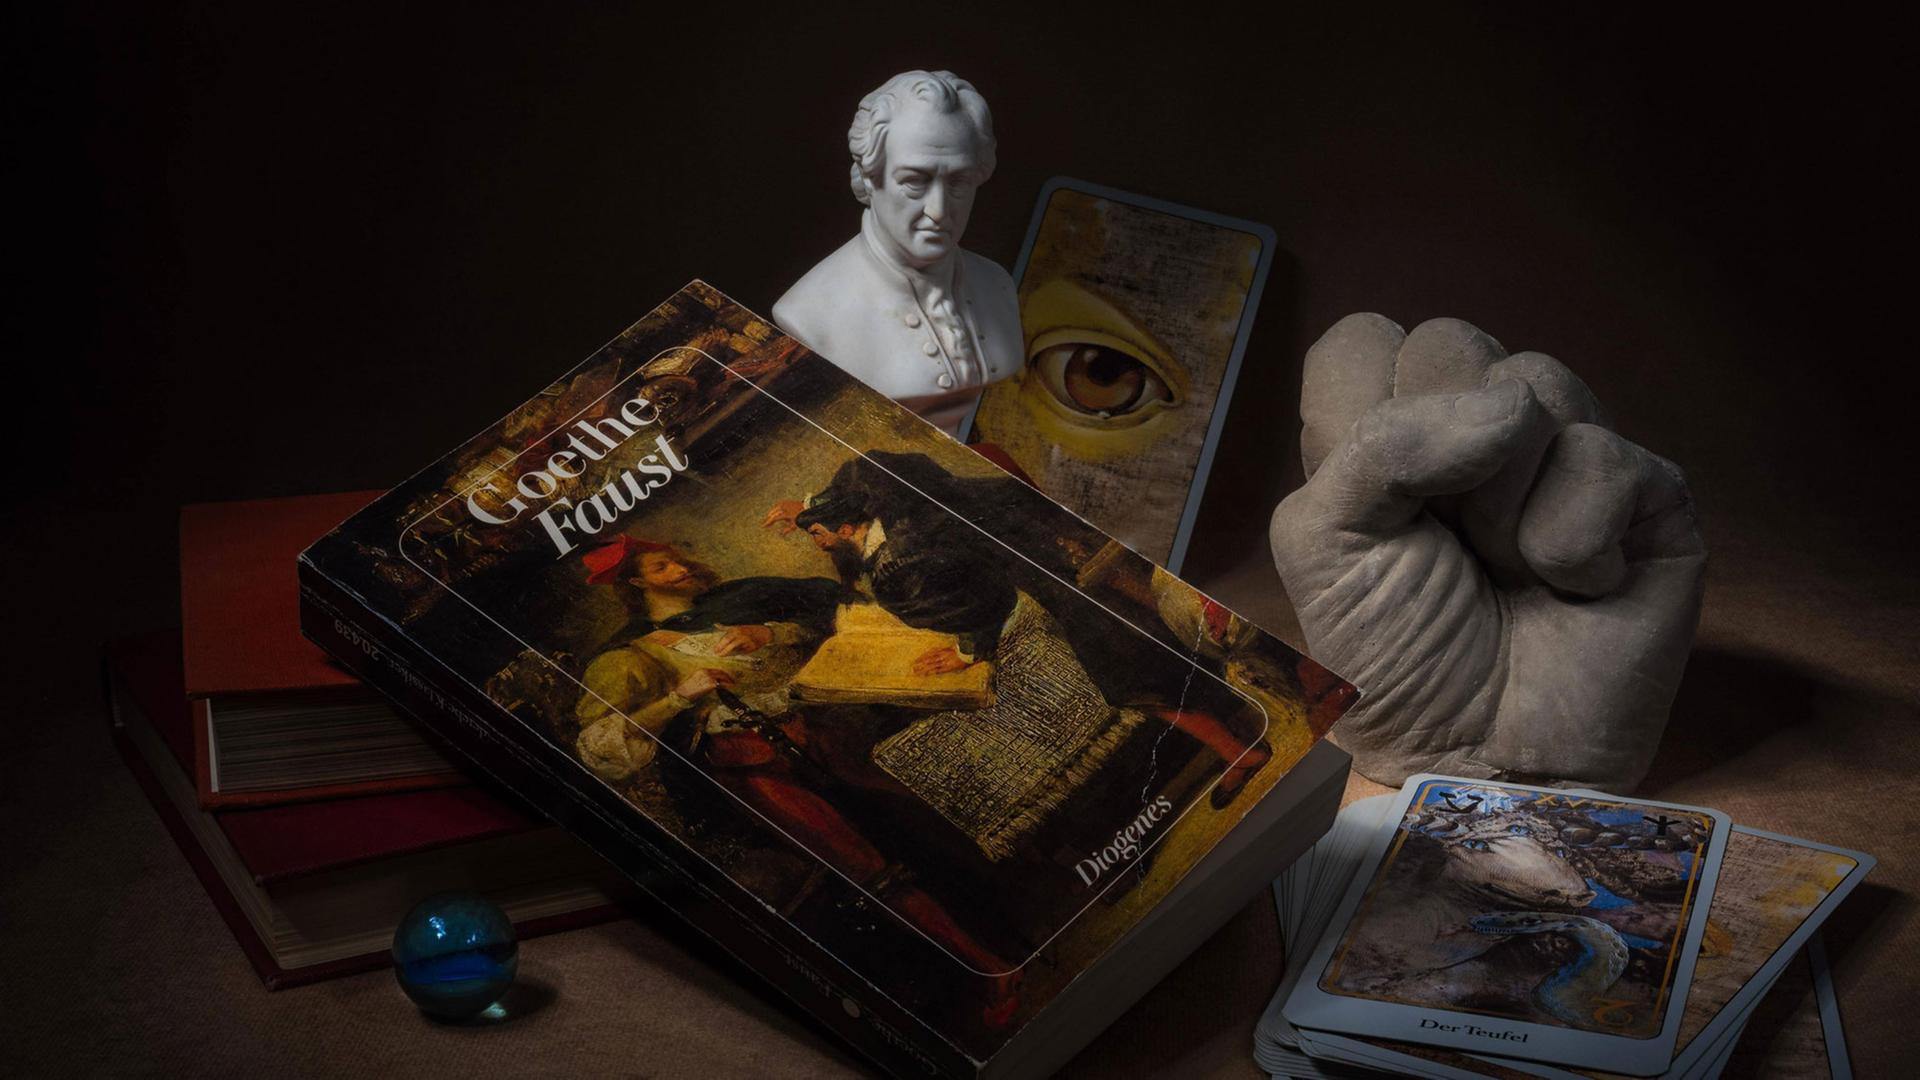 Hörspielkomödie über Goethes "Faust" und die Mühen des Deutschwerdens. Zu sehen: Stilleben mit Büchern, Glaskugel, Tarotkarten, Goethe-Büste, das Buch "Faust" und einer Plastikhand zu einer Faust geballt. 